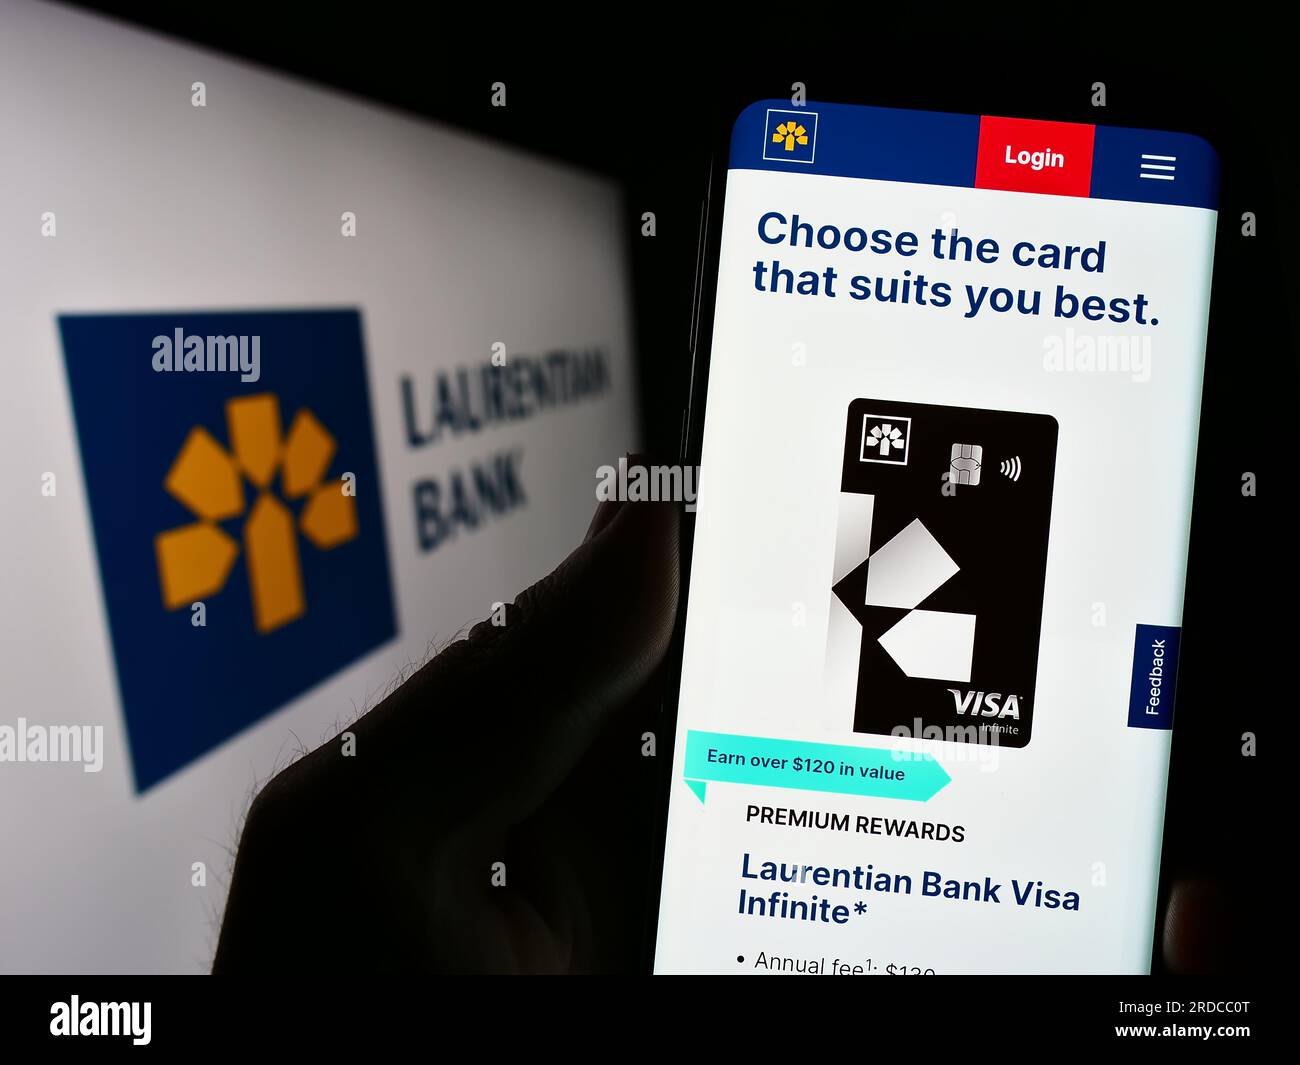 Persona che possiede uno smartphone con pagina Web della società finanziaria Laurentian Bank of Canada (LBC) sullo schermo con logo. Concentrarsi sul centro del display del telefono. Foto Stock